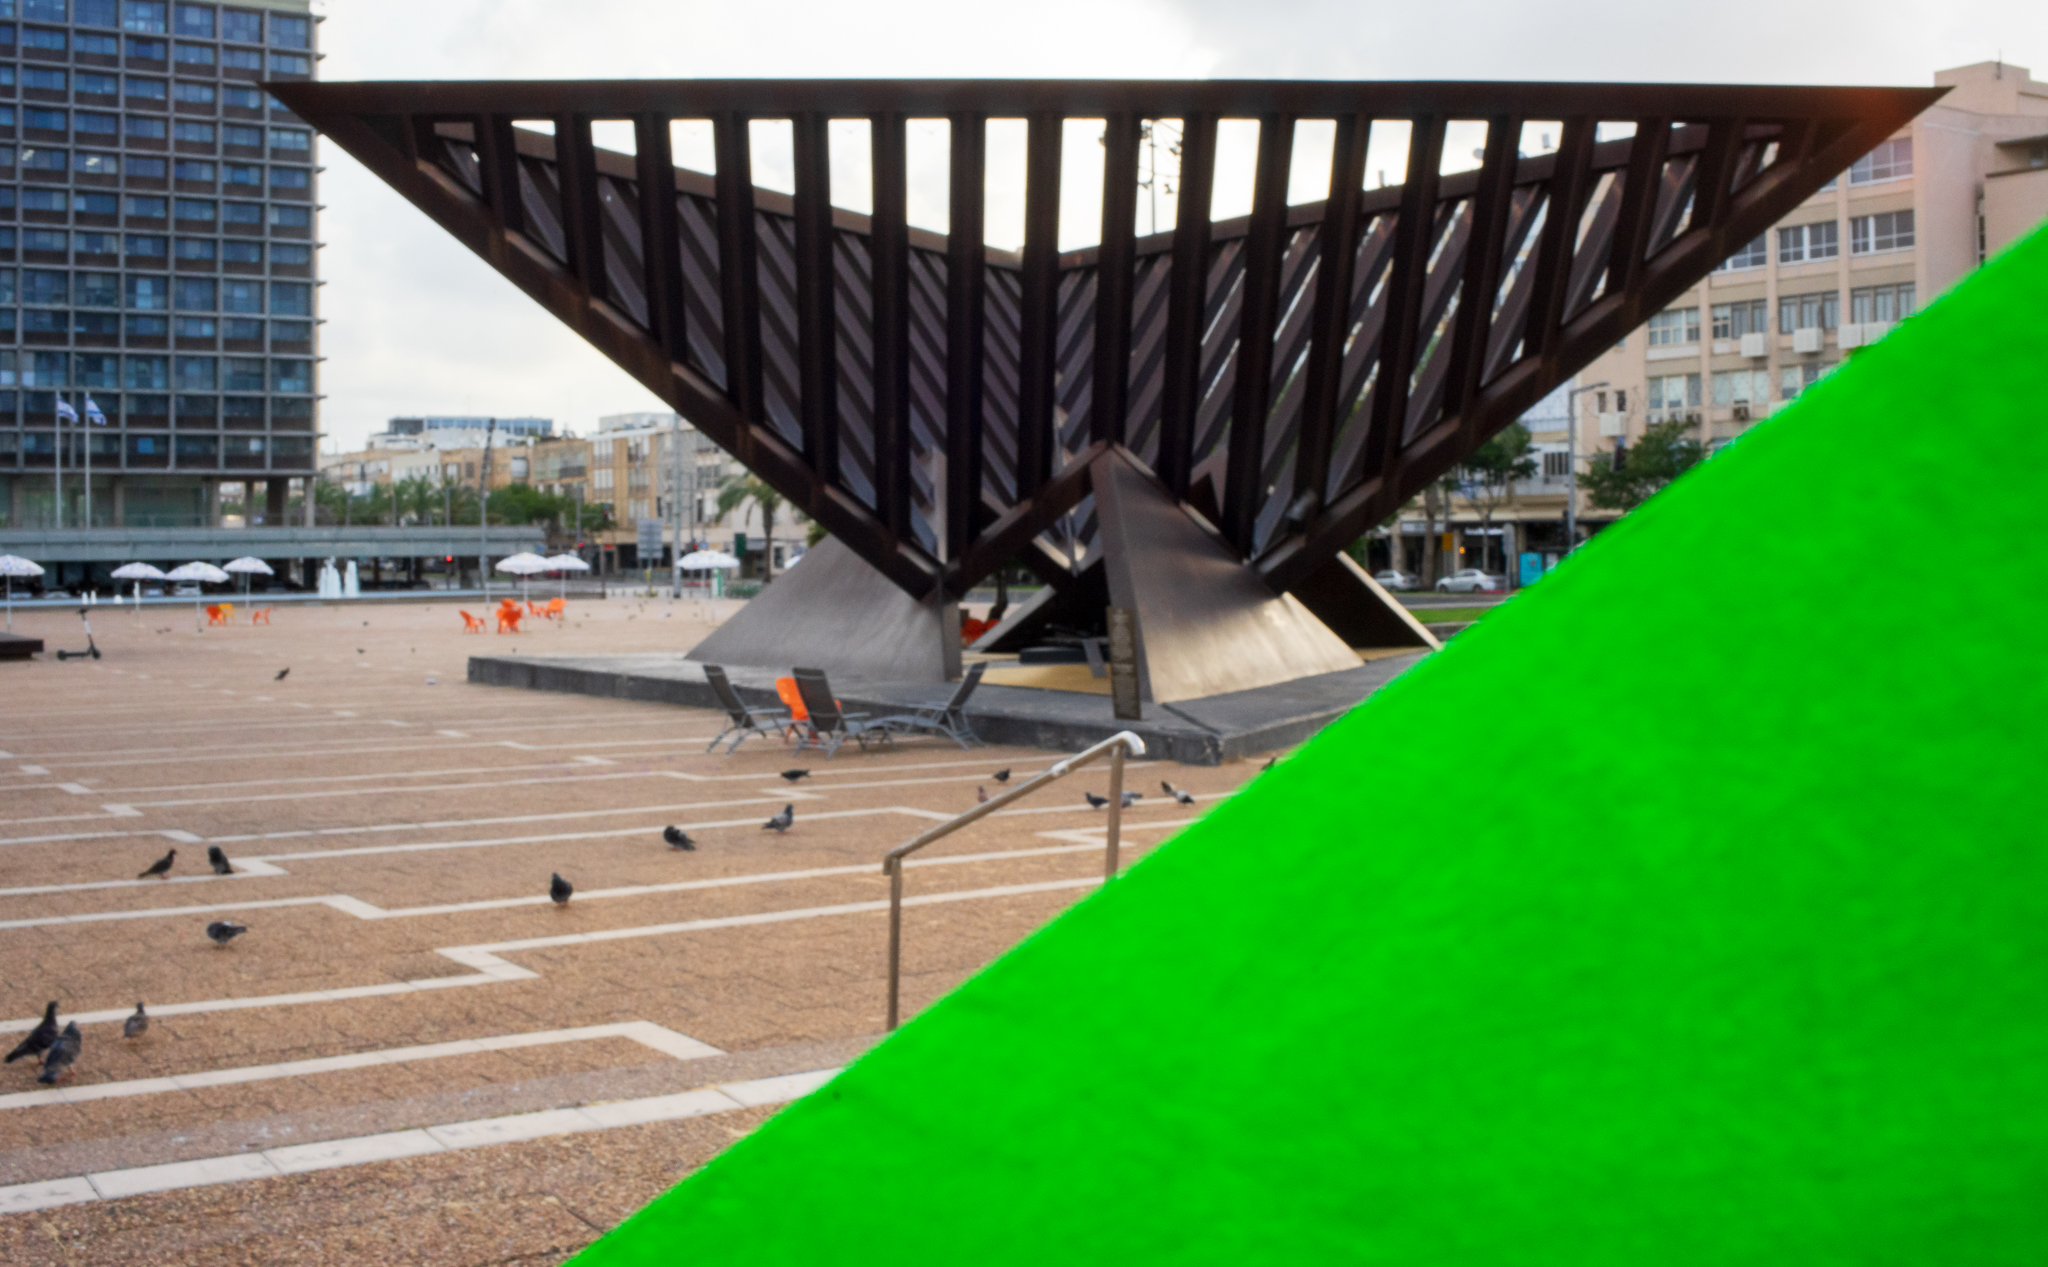 תמונה המציגה אנדרטה משולשת לשואה והתקומה מאת הפסל יגאל תומרקין, הממוקמת בכיכר רבין. חציו השמאלי-תחתון של התמונה מציג משולש בגוון ירוק זוהר המזוהה עם גווני הפרויקט.